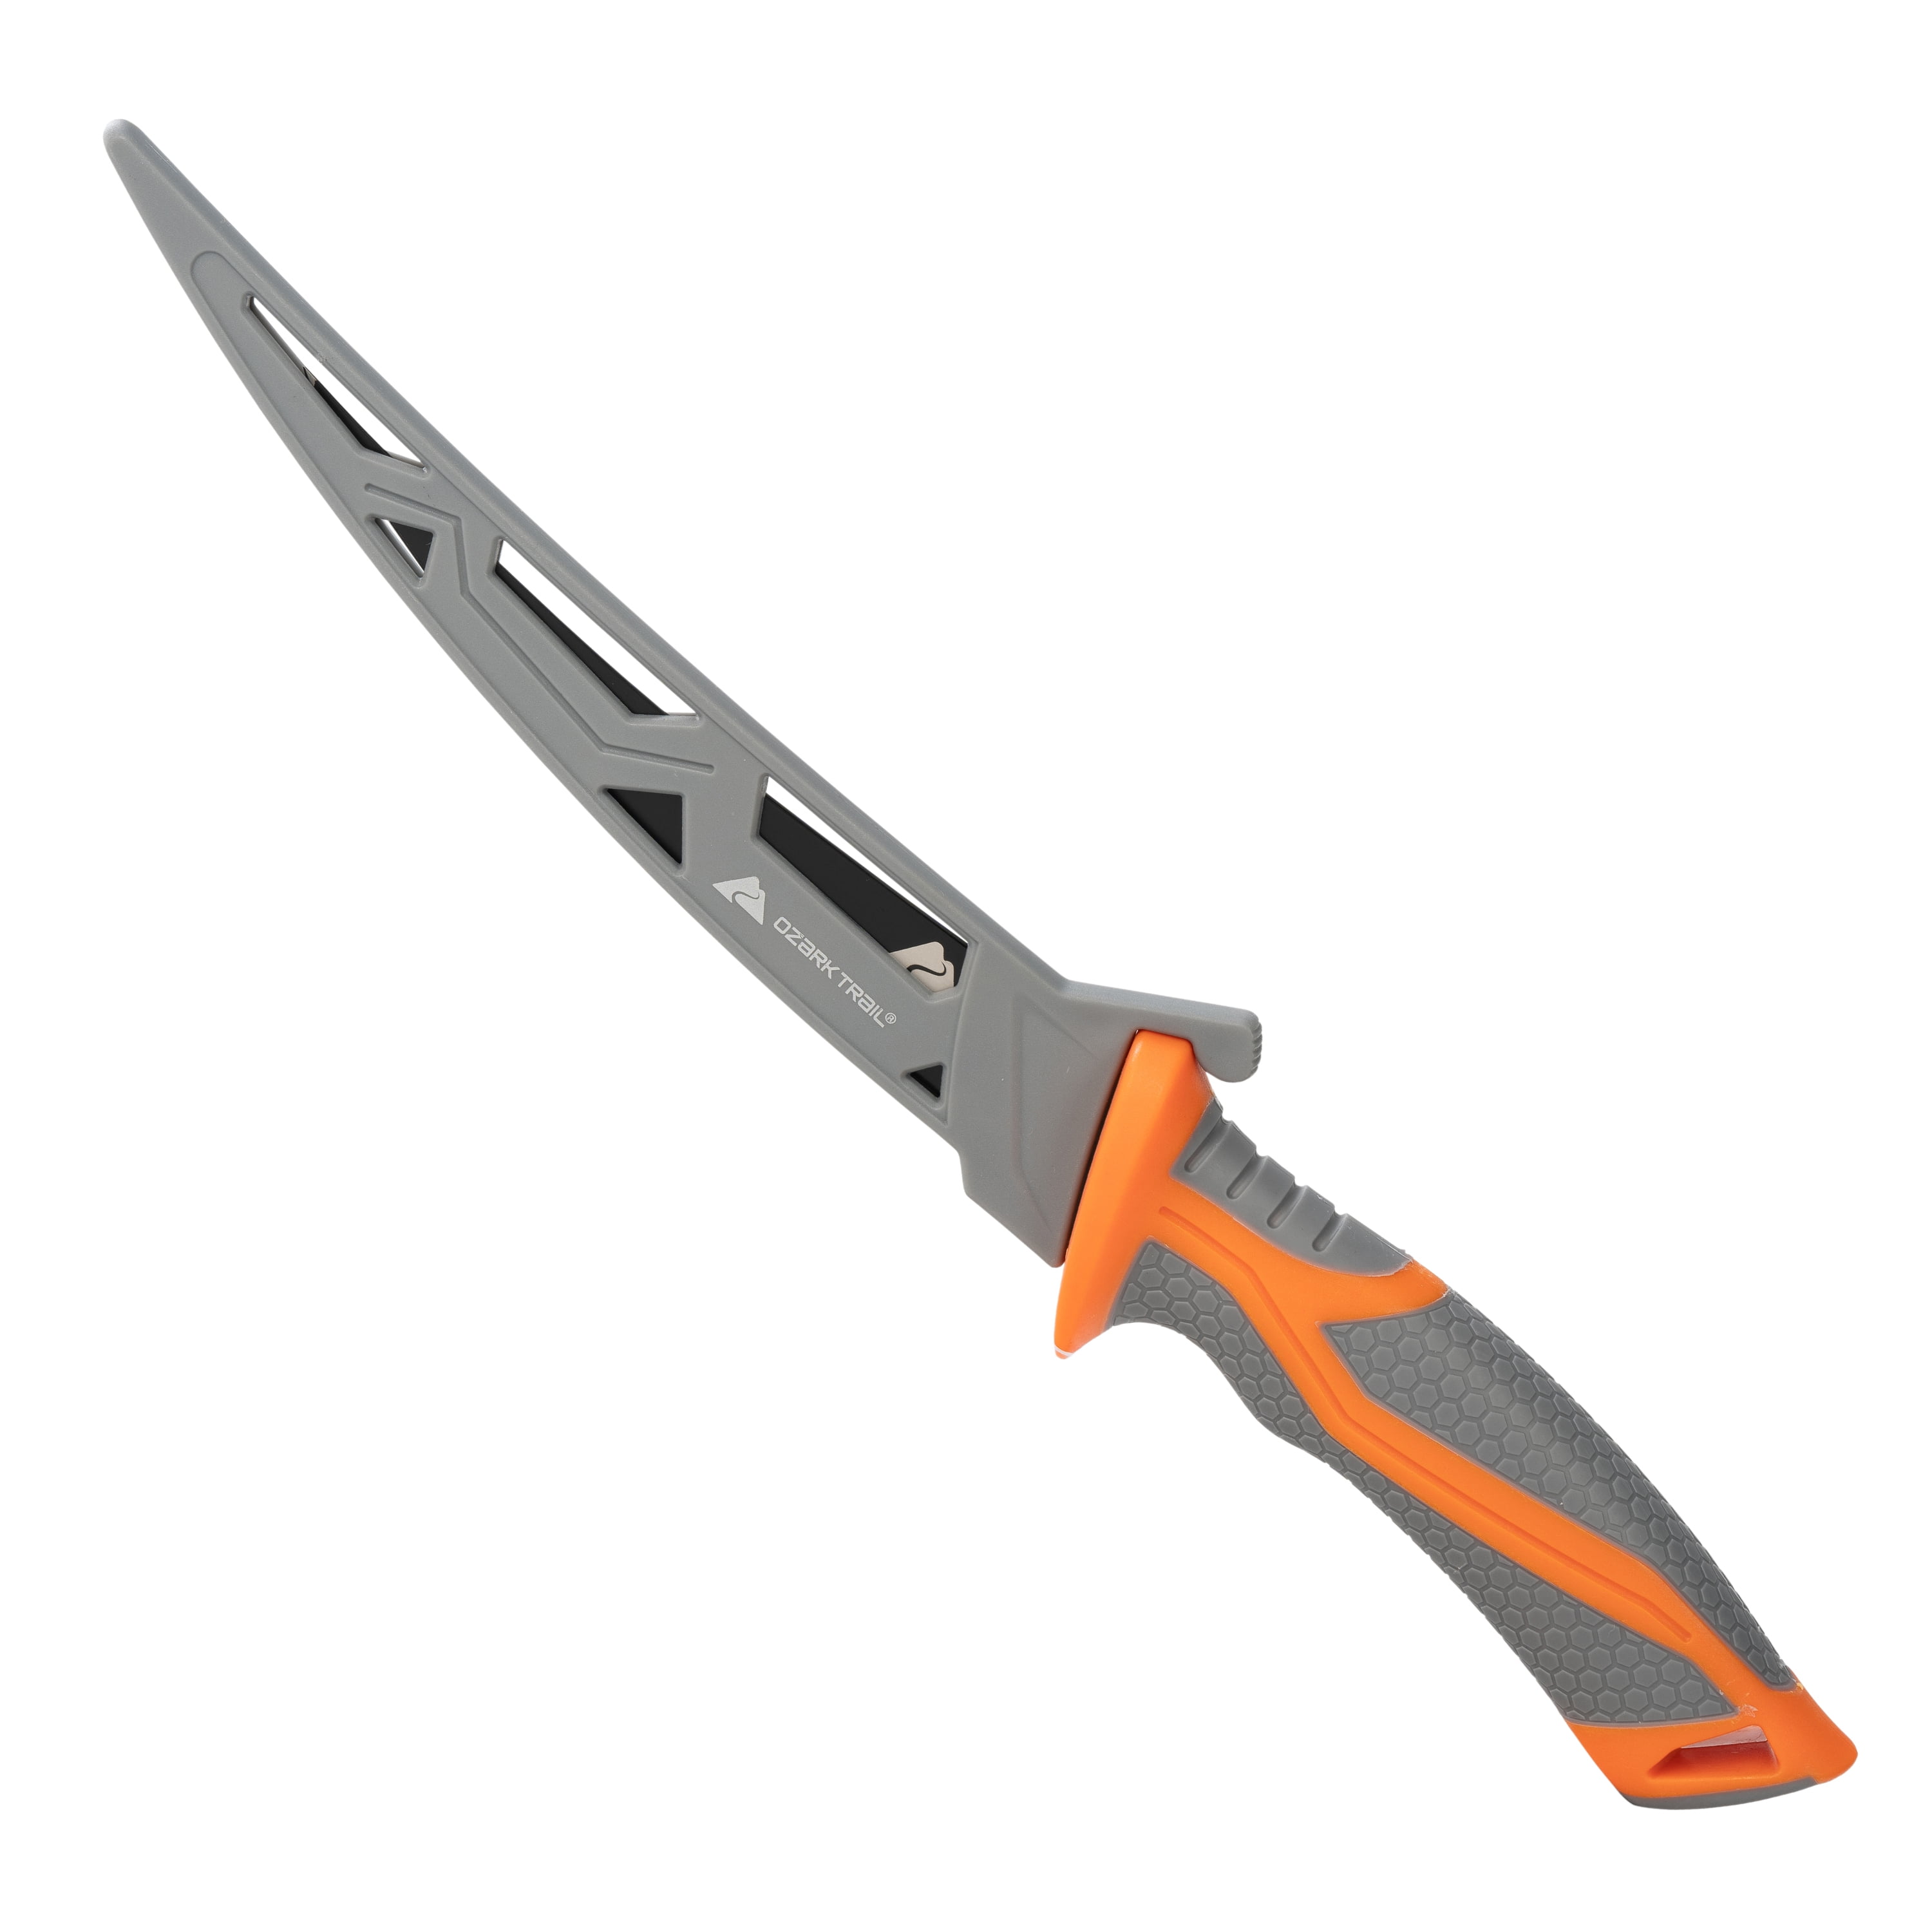 ATISEN Fillet Knife Fishing Gear, Razor Sharp G4116 German